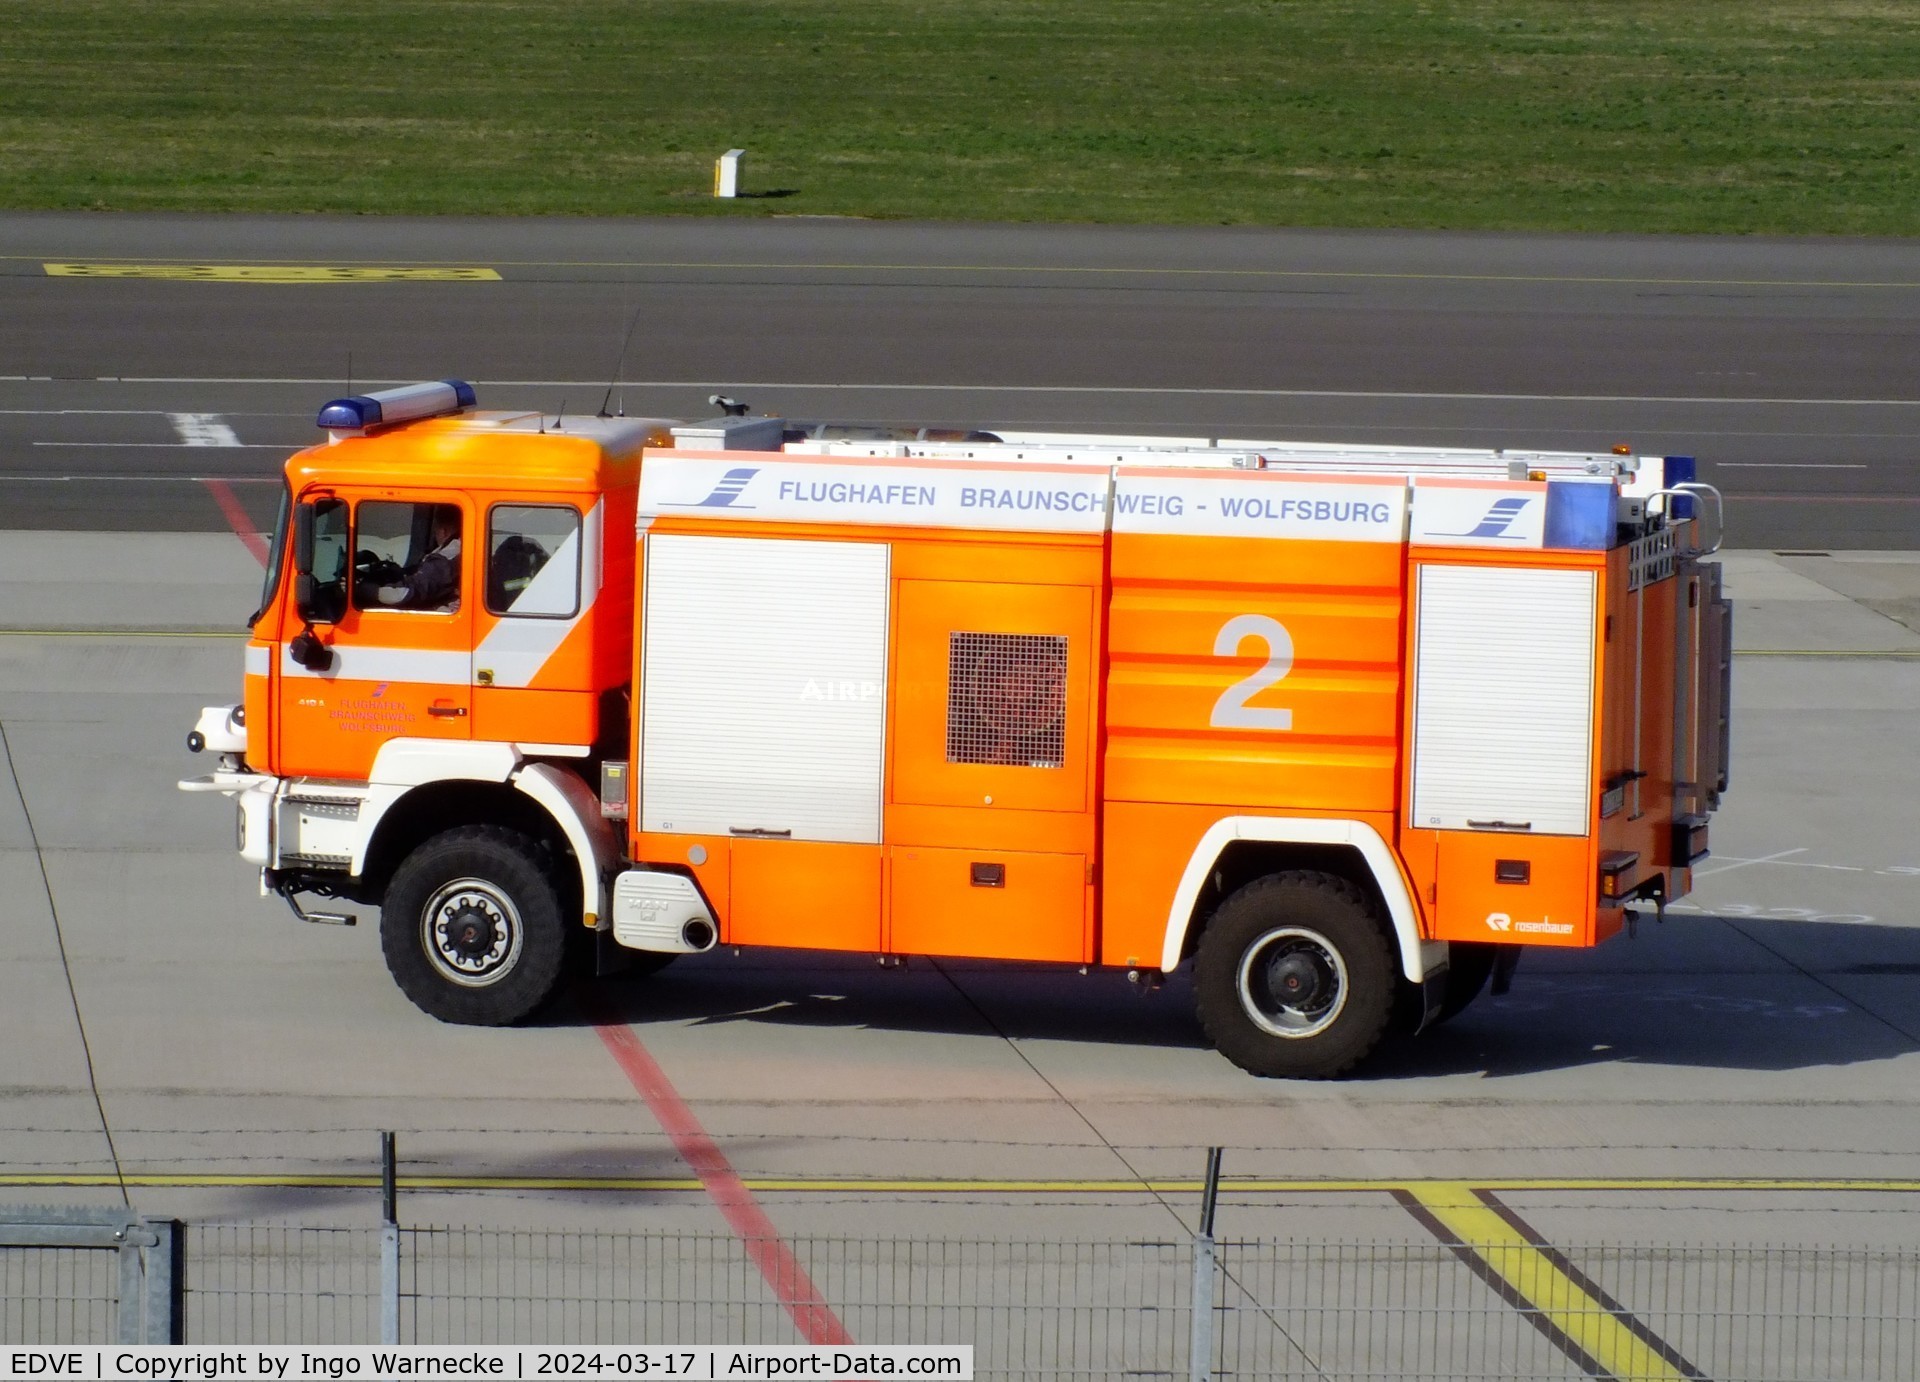 Braunschweig-Wolfsburg Regional Airport, Braunschweig, Lower Saxony Germany (EDVE) - airport fire truck at Braunschweig/Wolfsburg airport, BS/Waggum